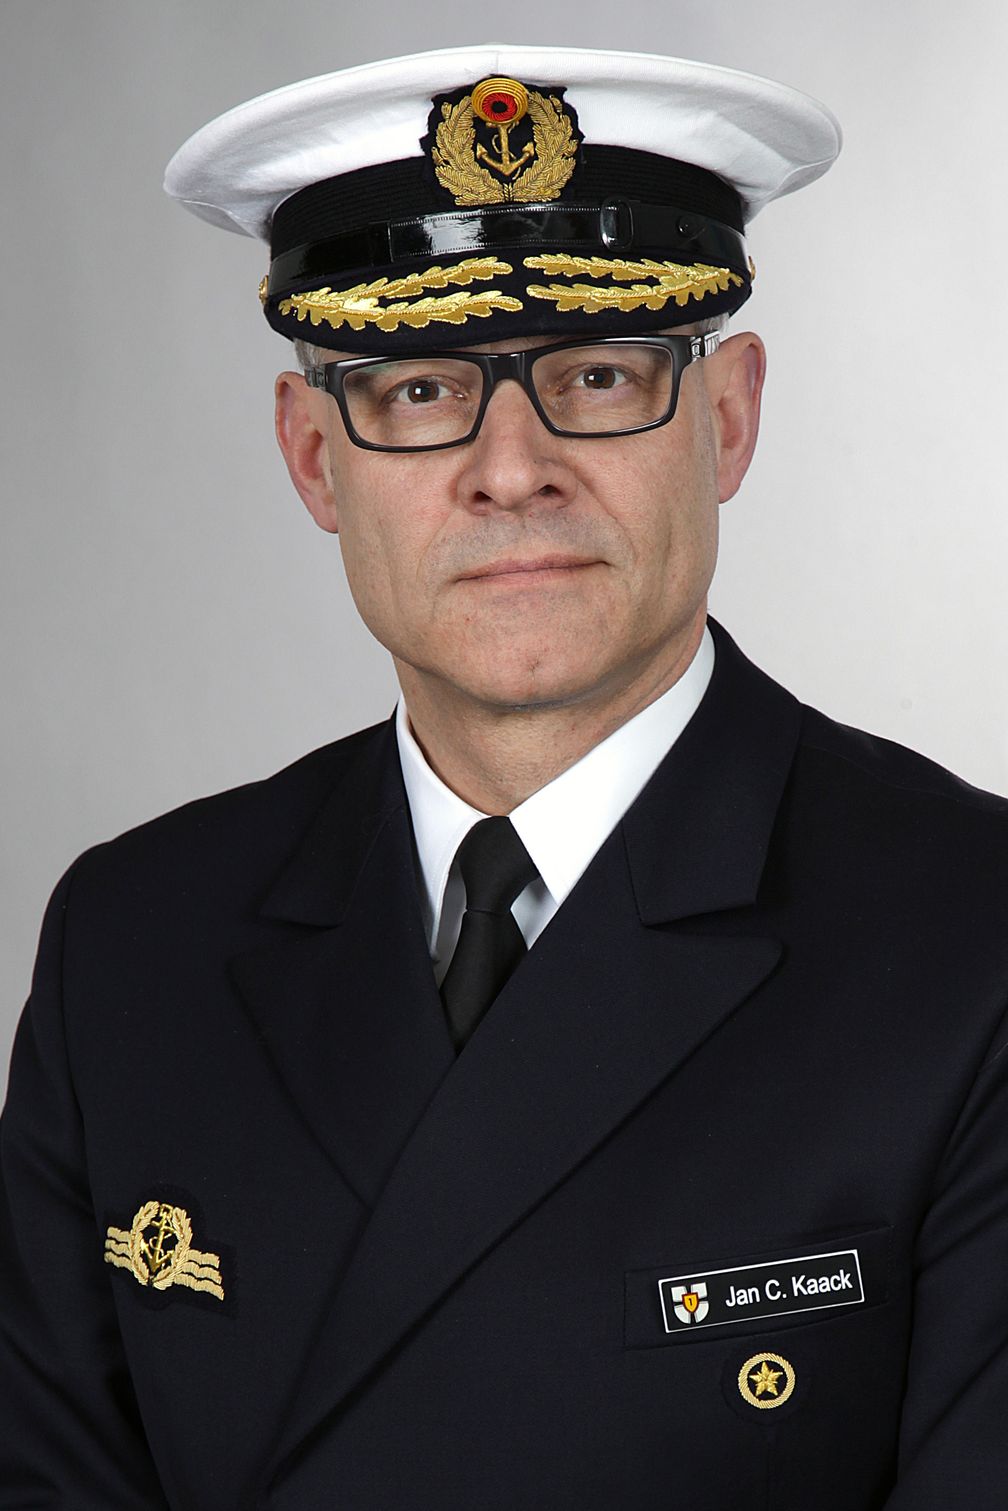 Konteradmiral Jan Christian Kaack (58) ist der designierte Nachfolger im Amt des Befehlshaber Flotte und Unterstützungskräfte der Marine. Bild: Bundeswehr